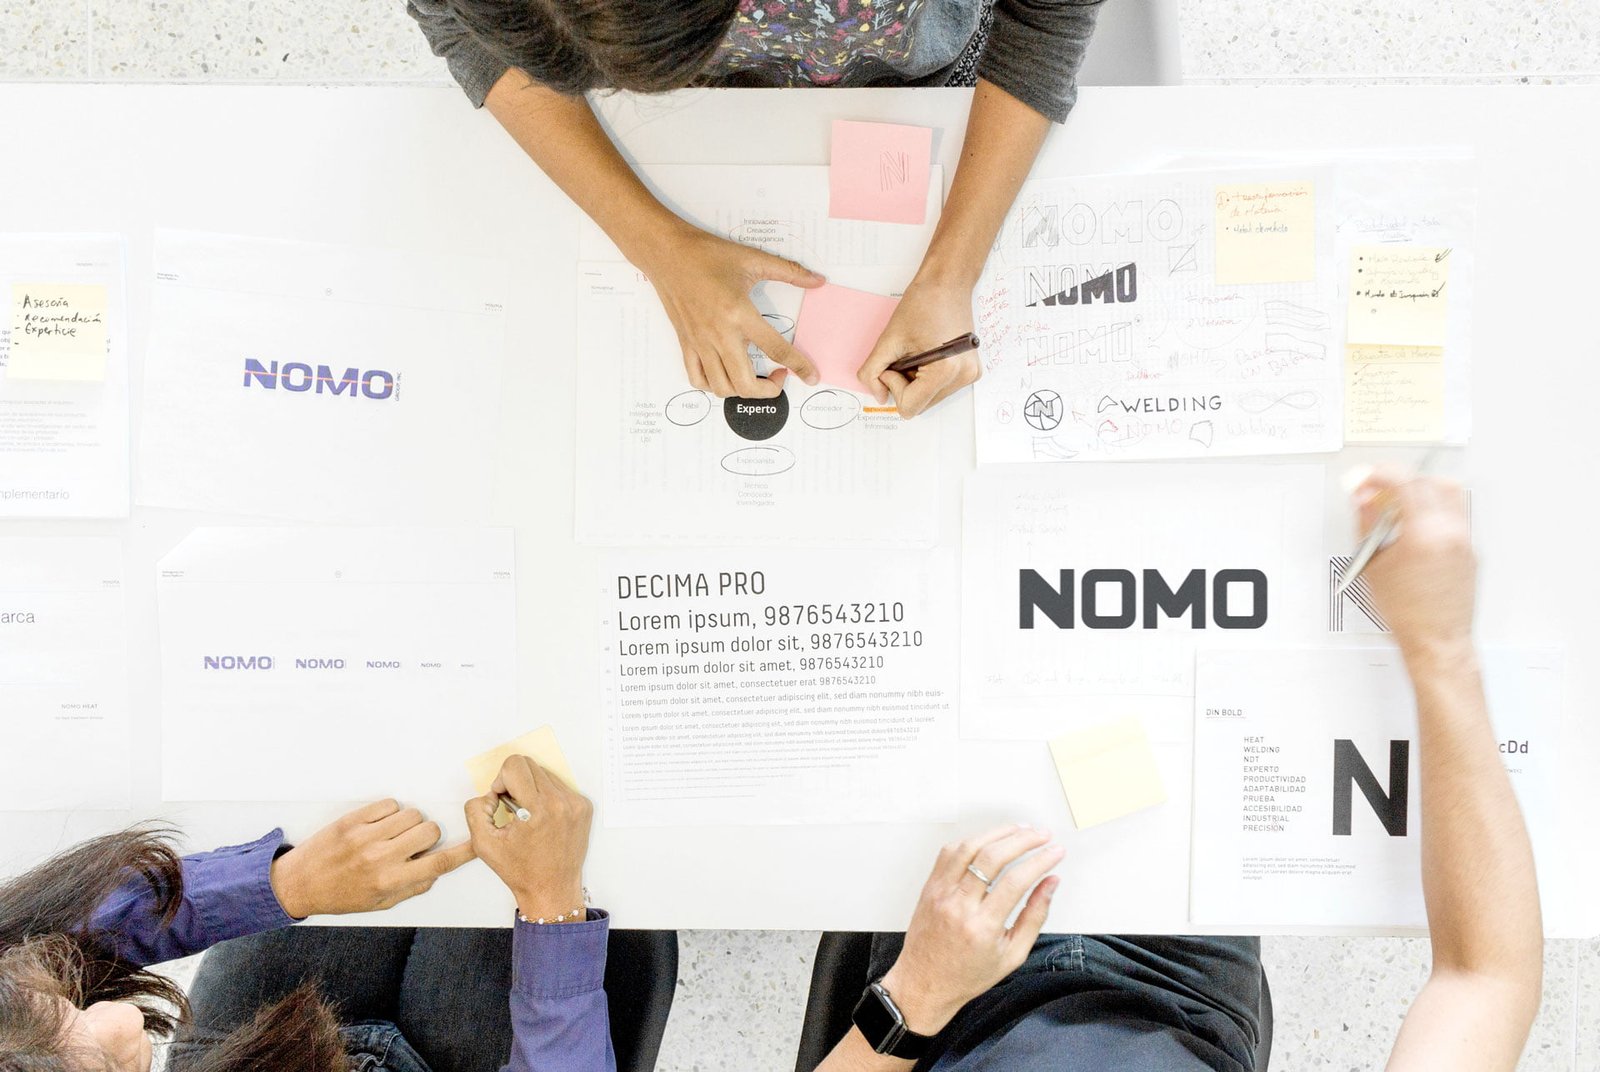 Equipo de trabajo de Umbel trabajando en el rebranding de Nomo